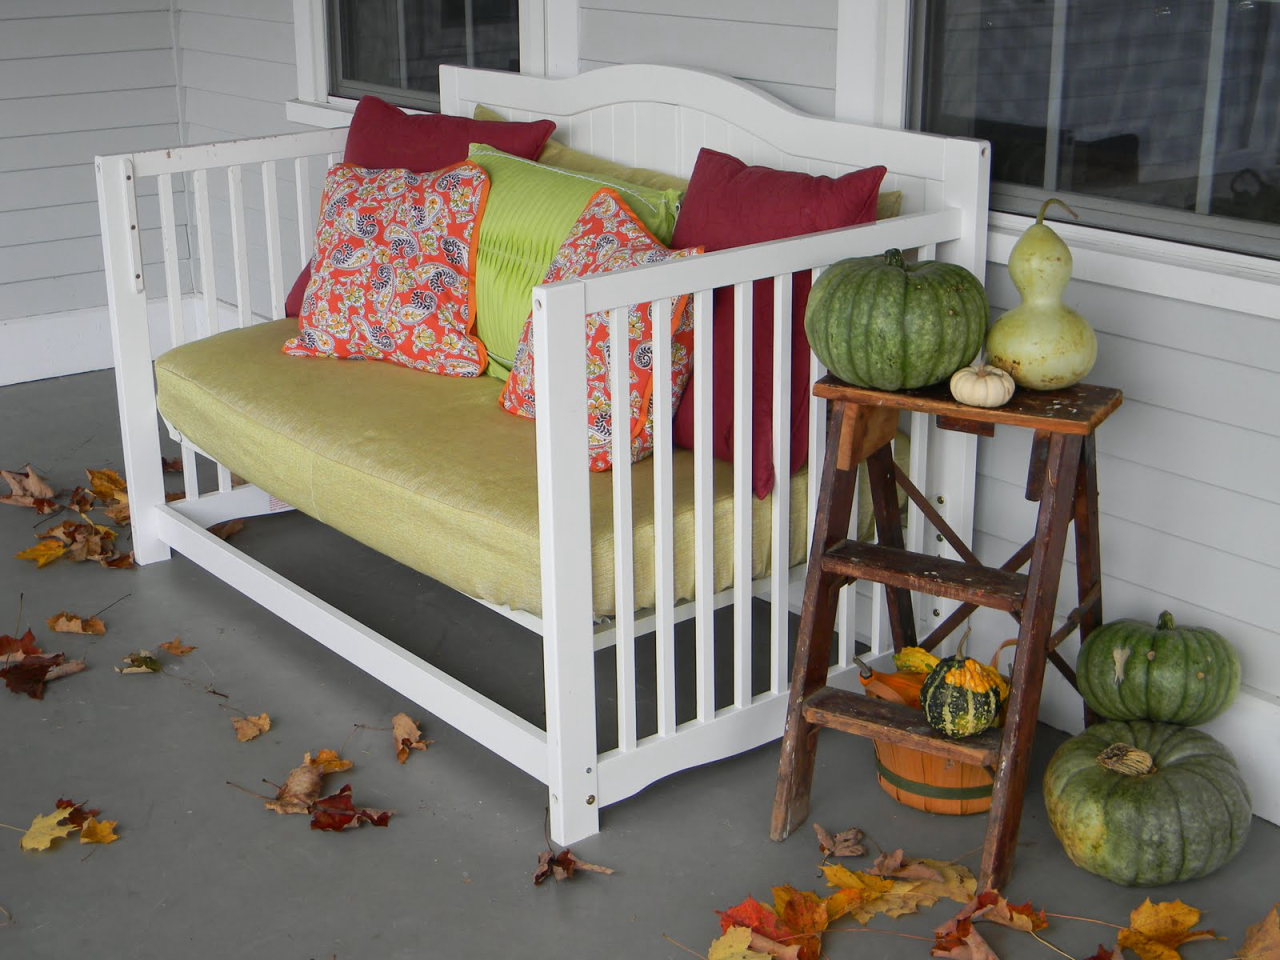 13 - Um confortável banco para a varanda pode ser feito com a estrutura do berço com um reforço dos pés. 